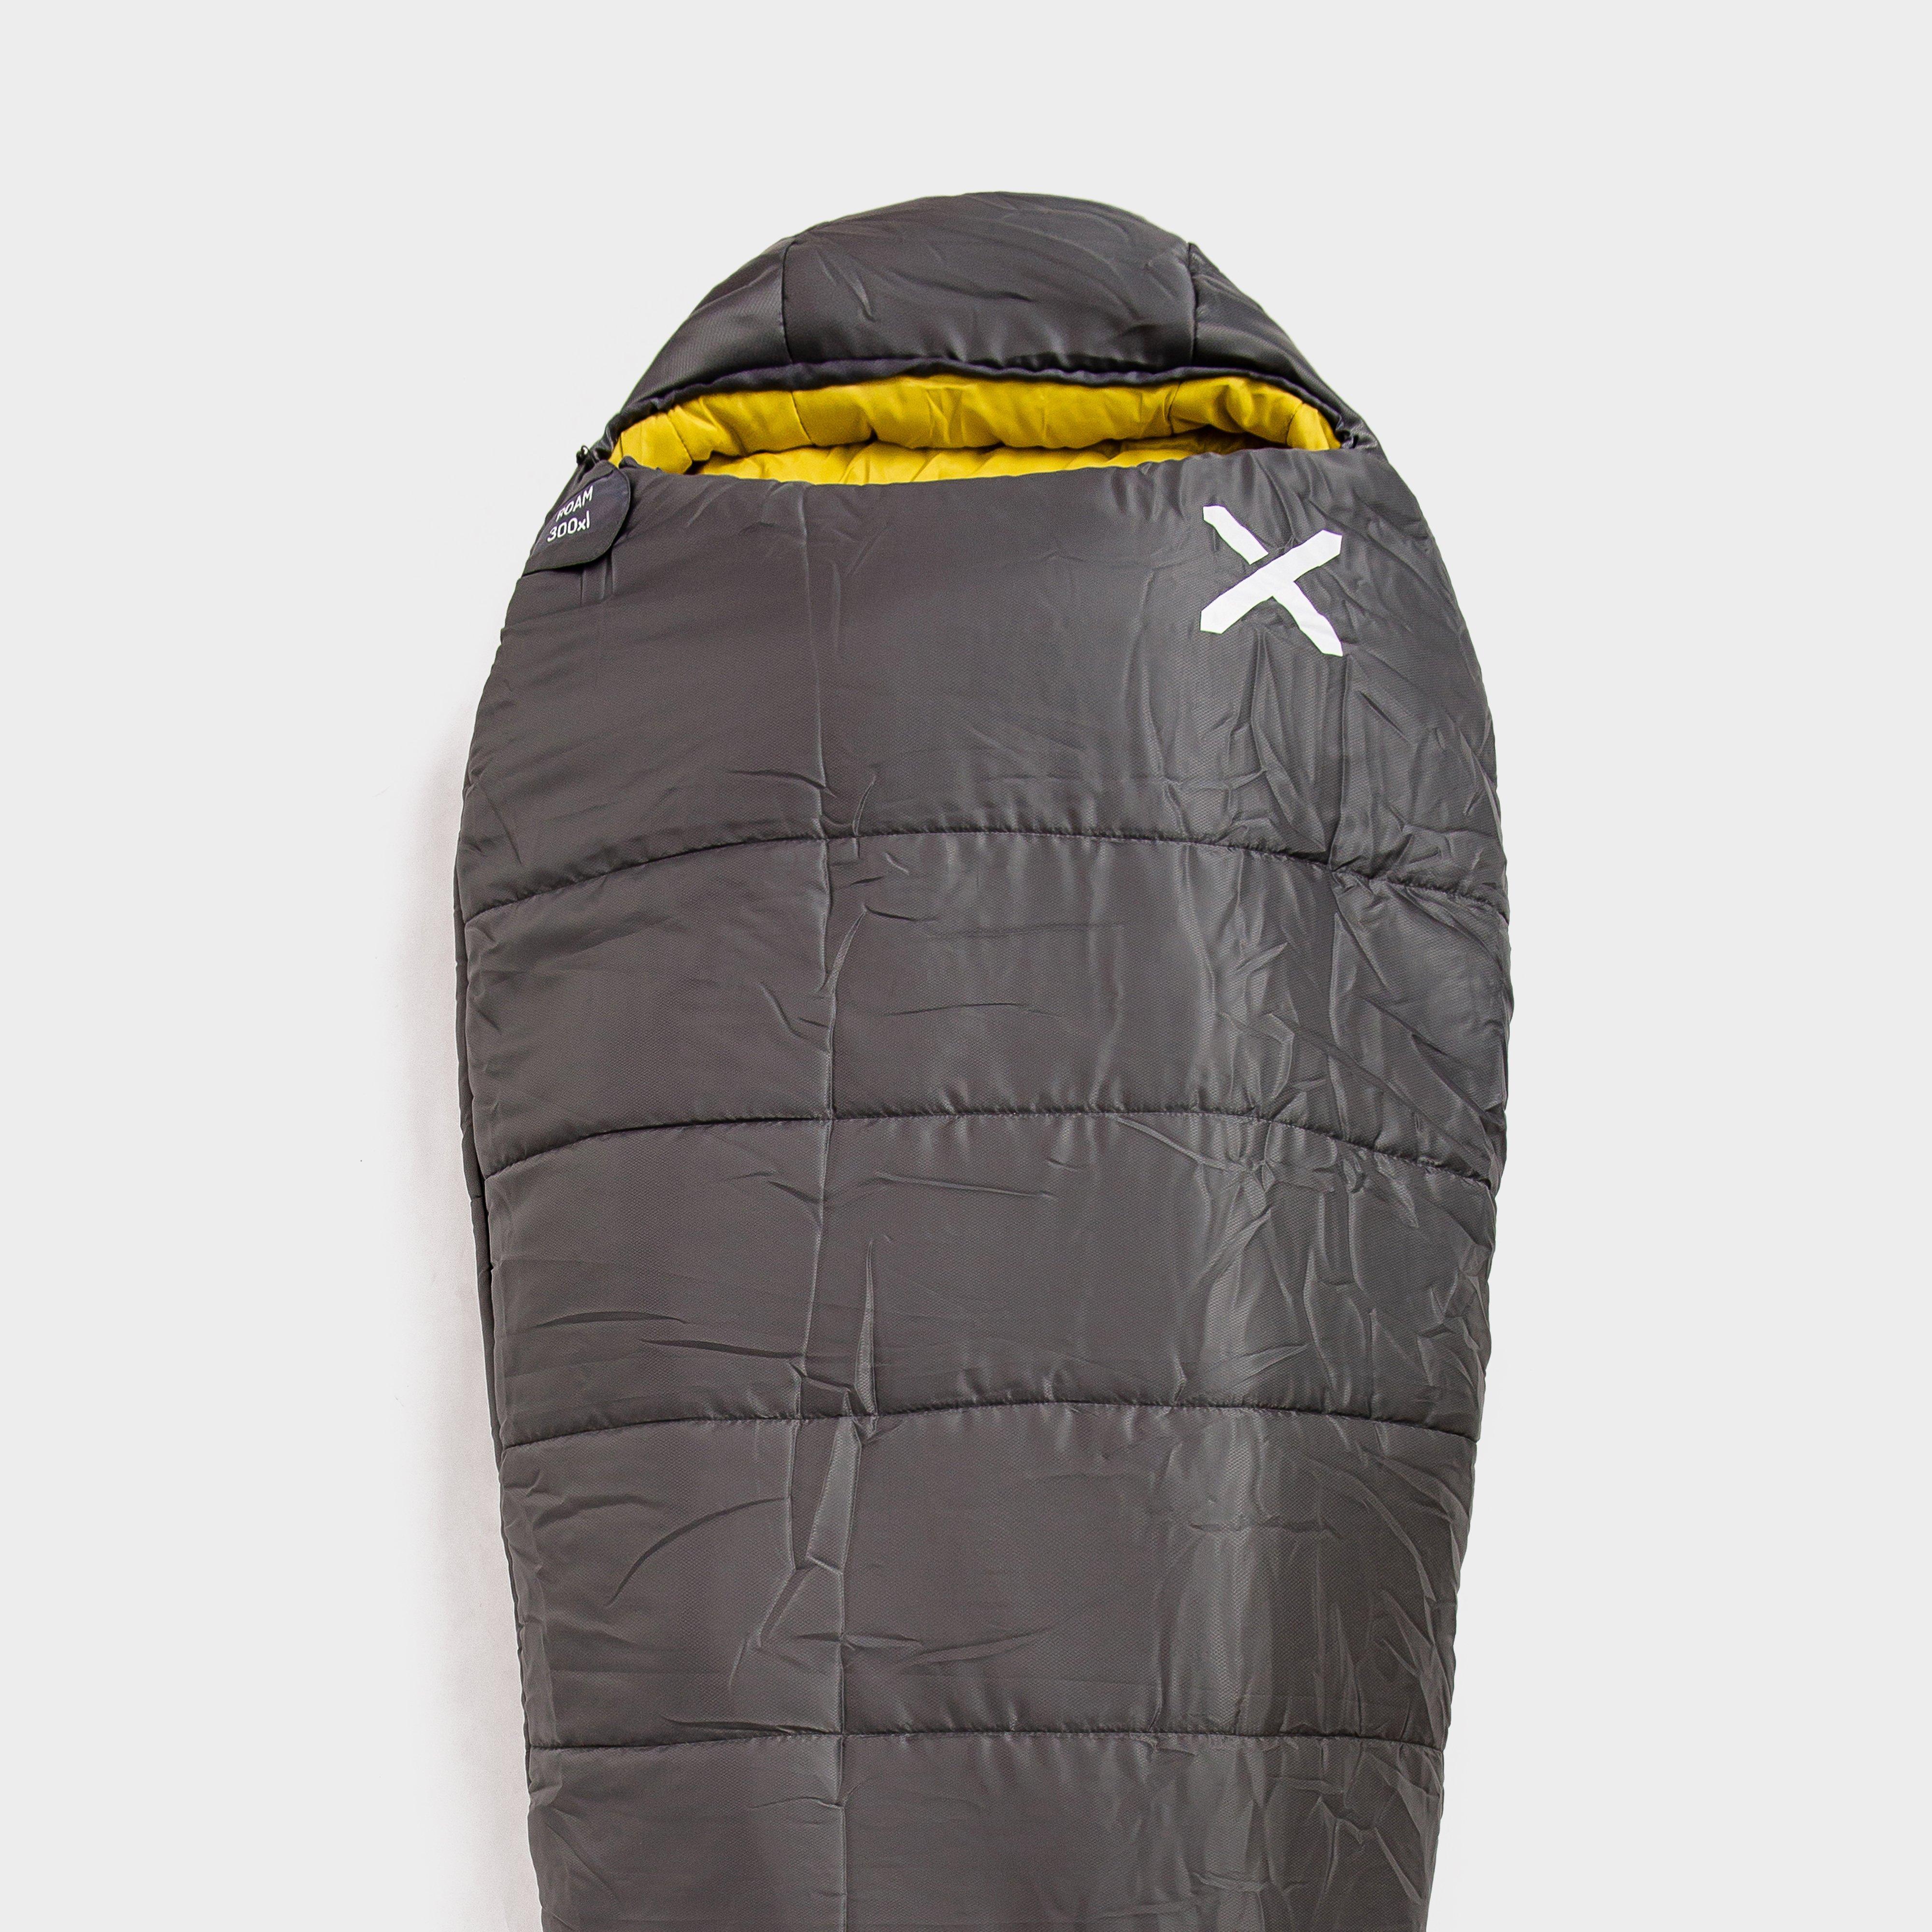 OEX Oex Roam 300 Xl Sleeping Bag - Grey, Grey